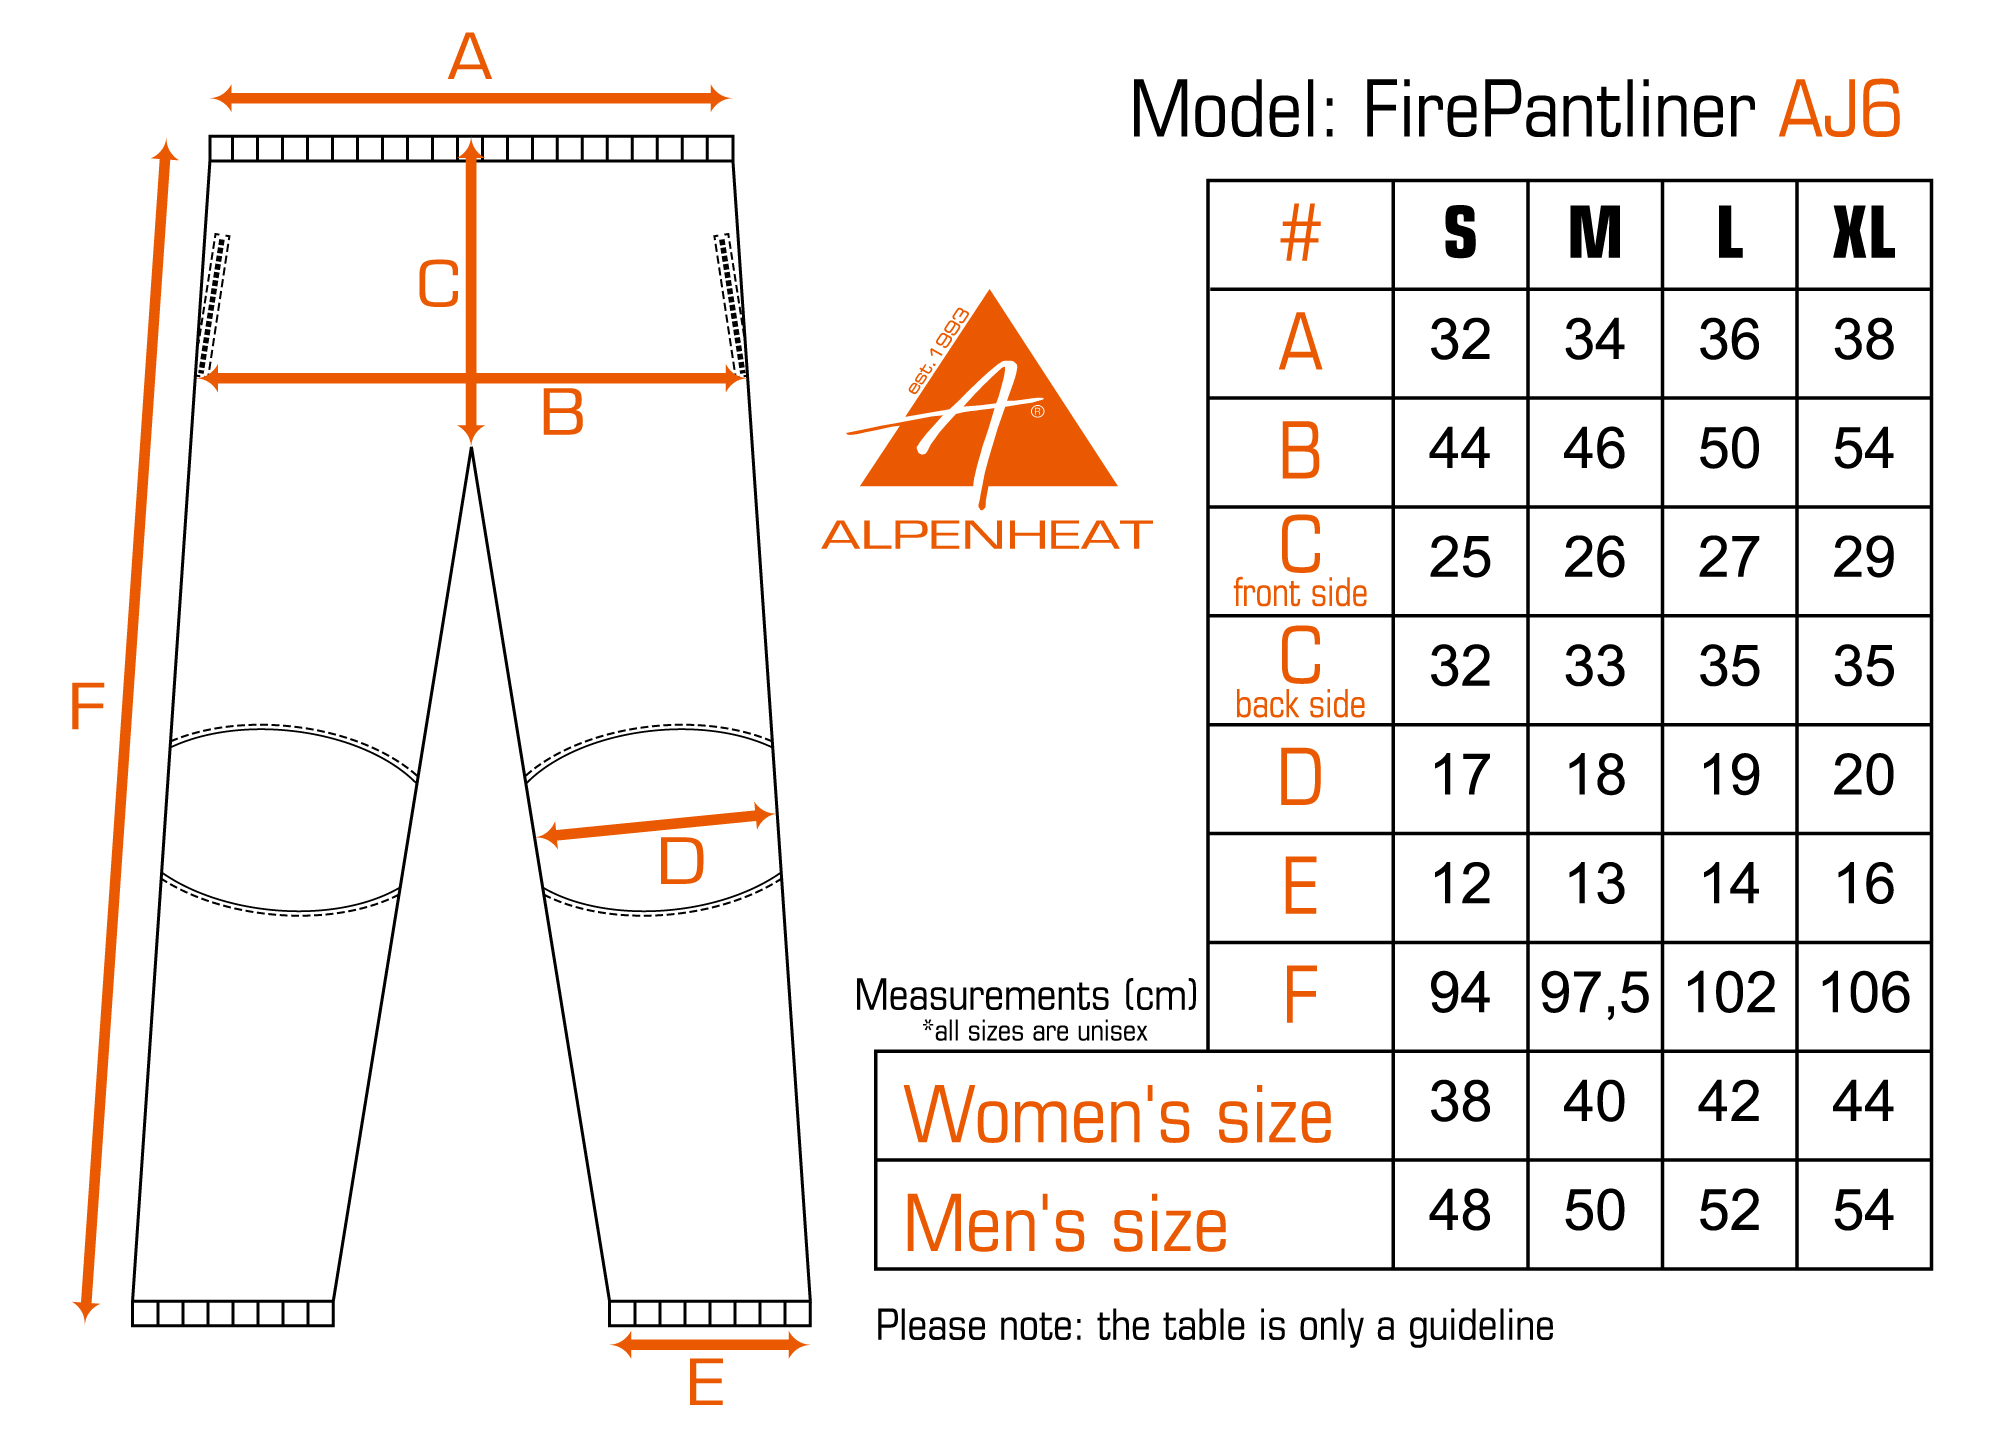 AJ6 Heated Underpants FIRE-PANTLINER